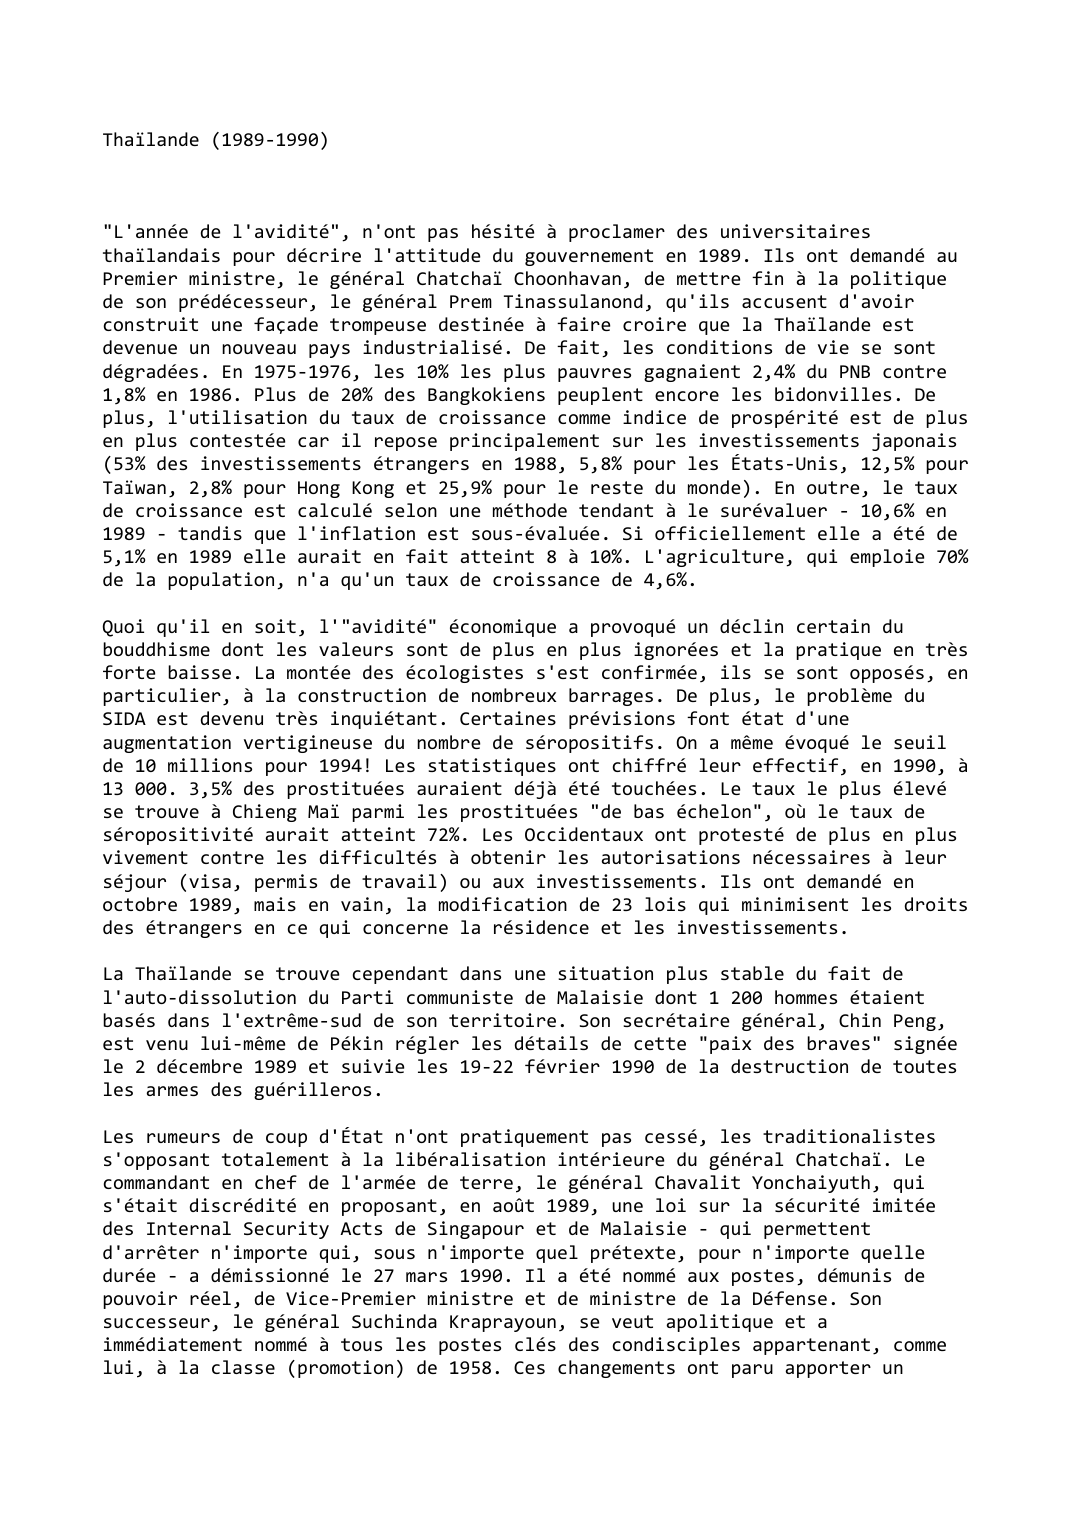 Prévisualisation du document Thaïlande (1989-1990)